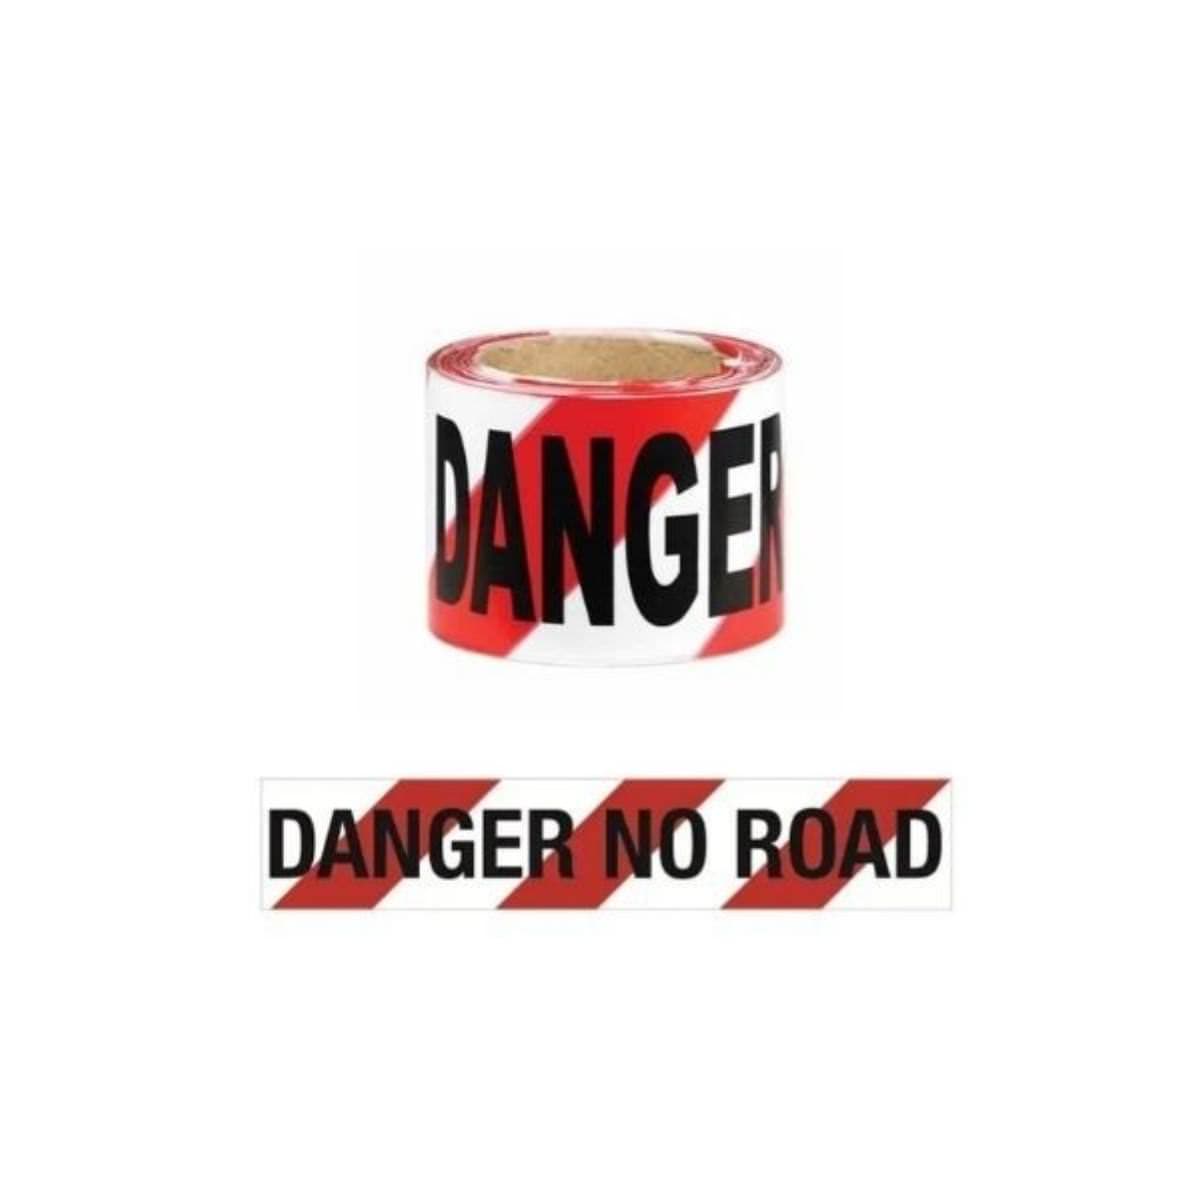 Husky 560 Red/White "DANGER NO ROAD" Barrier Tape (Roll)